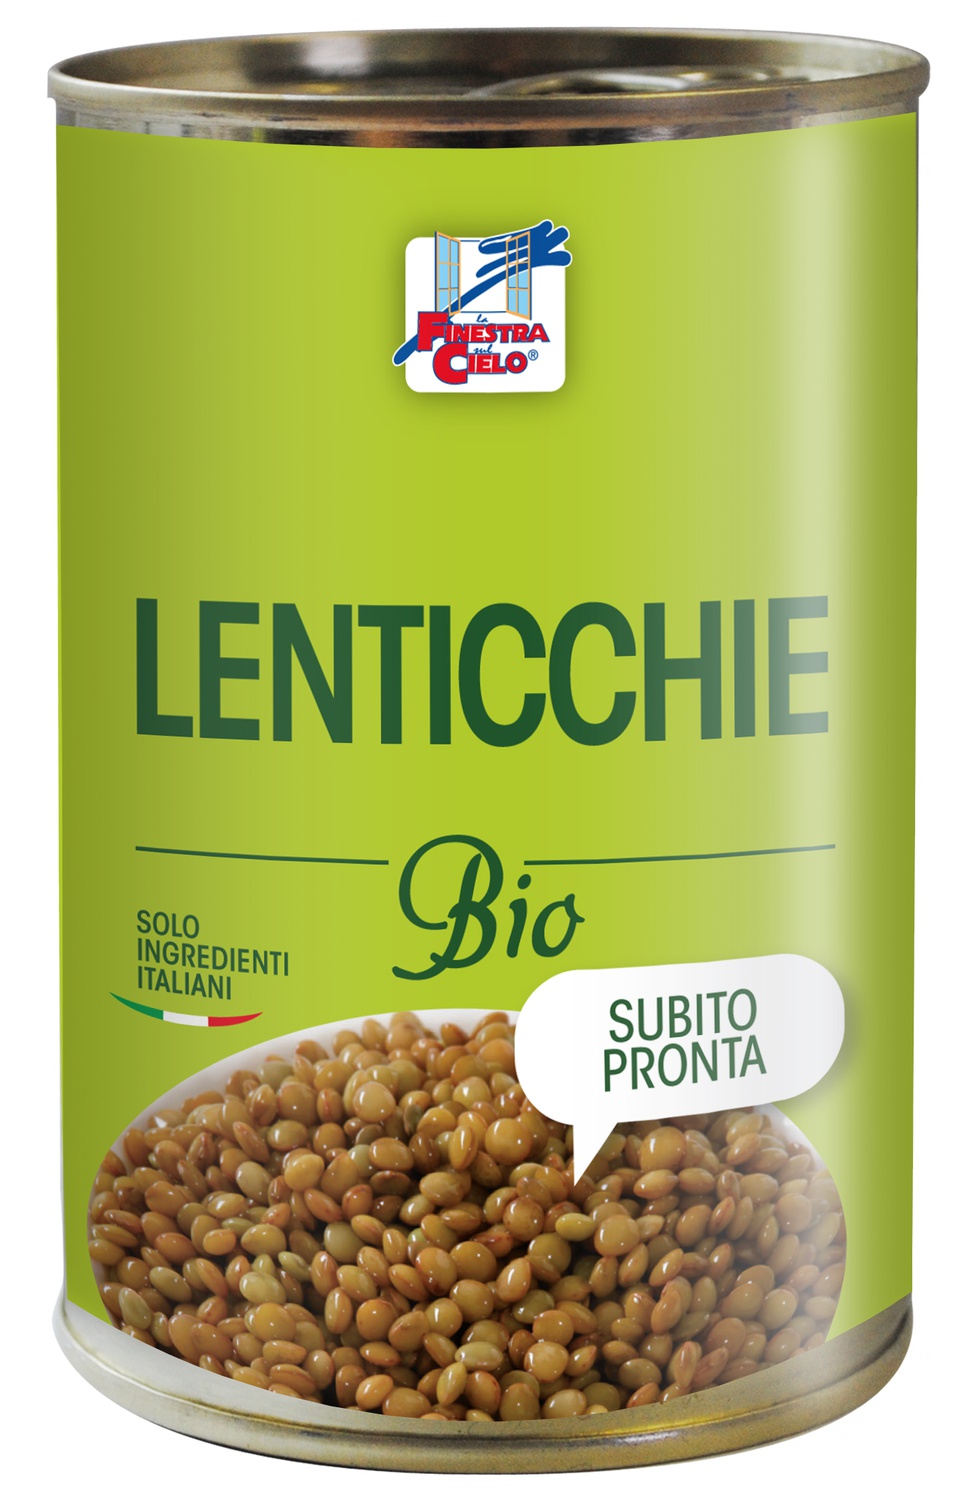 Image of Lenticchie Bio La Finestra Sul Cielo 400g